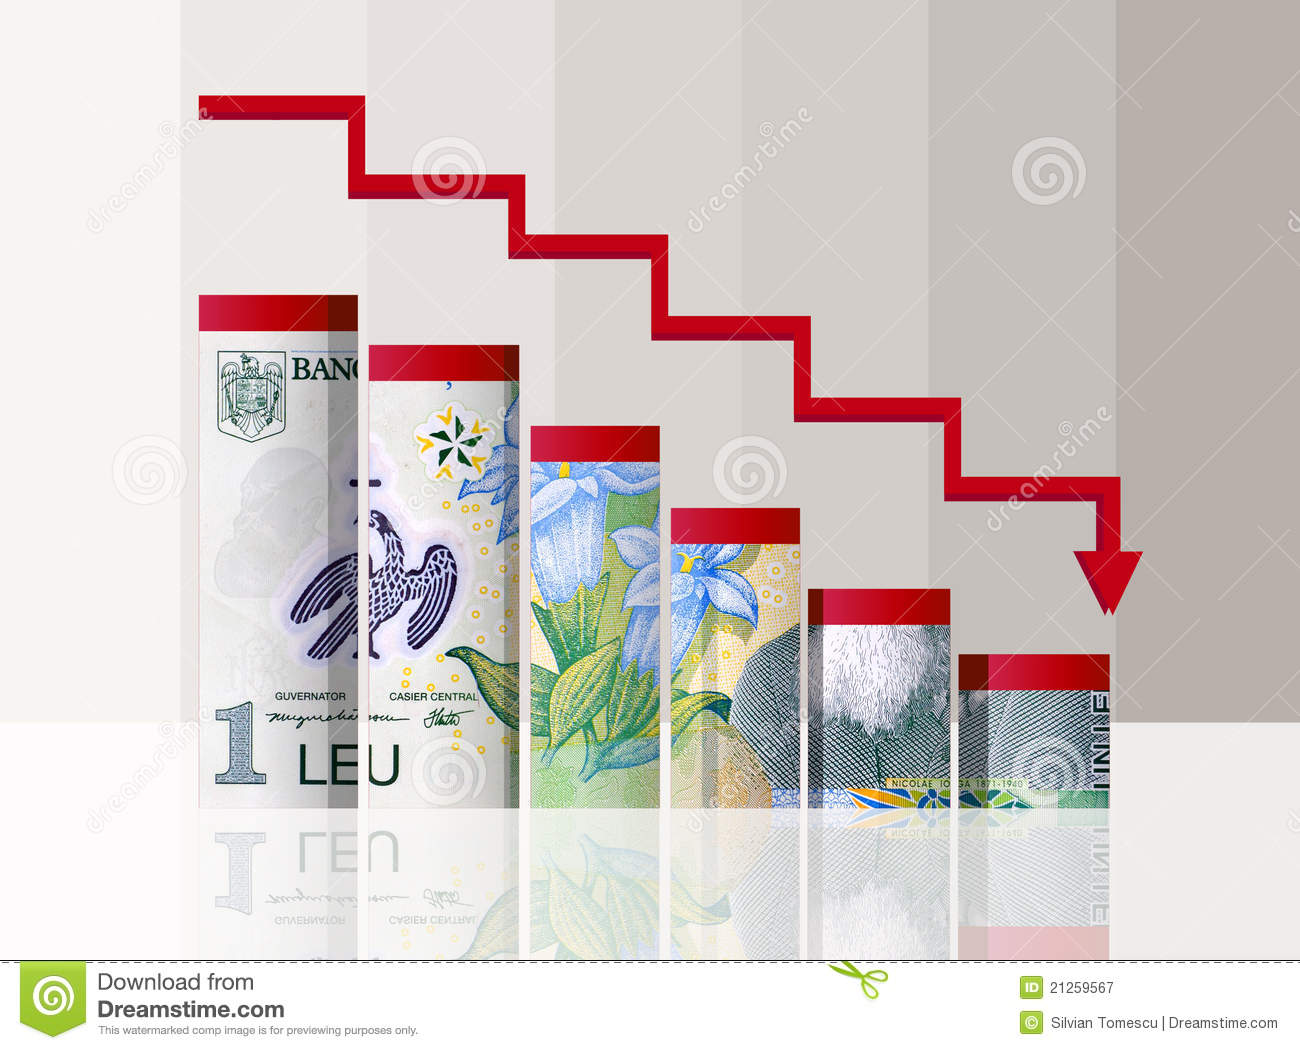 Romanian Leu HD wallpapers, Desktop wallpaper - most viewed